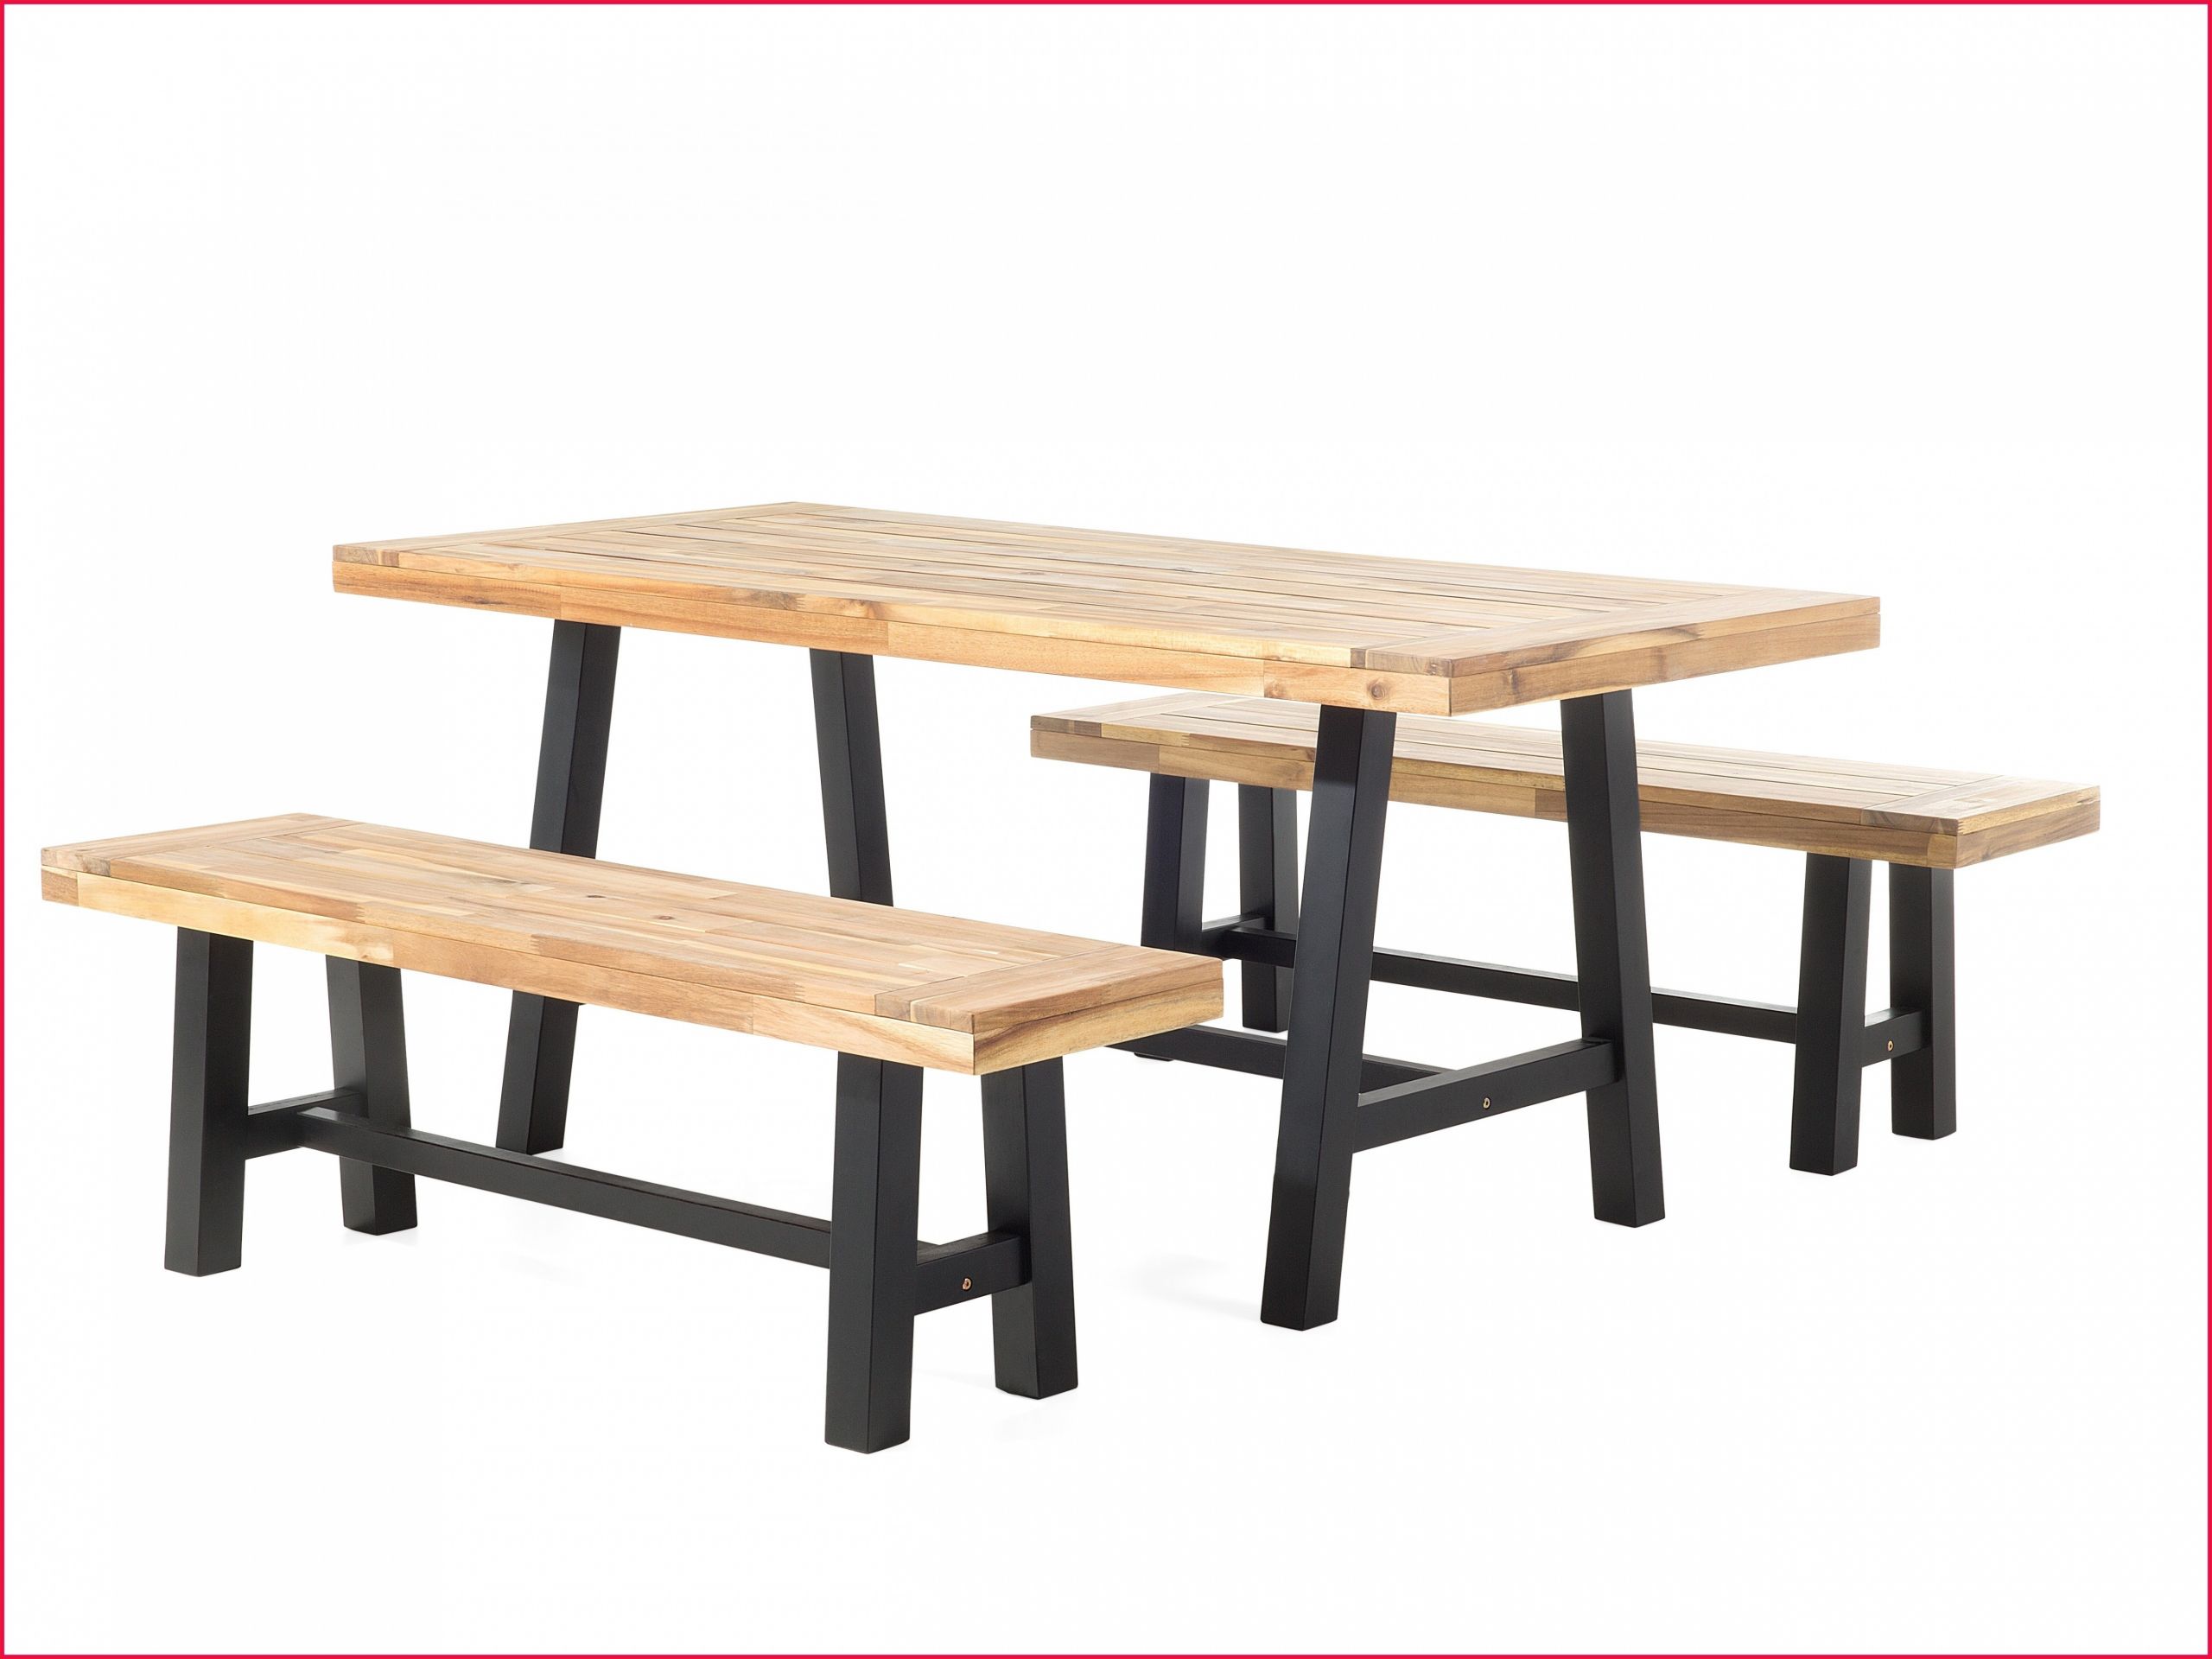 table et banc de jardin genial innovante banc pour jardin image de jardin decoratif de table et banc de jardin scaled